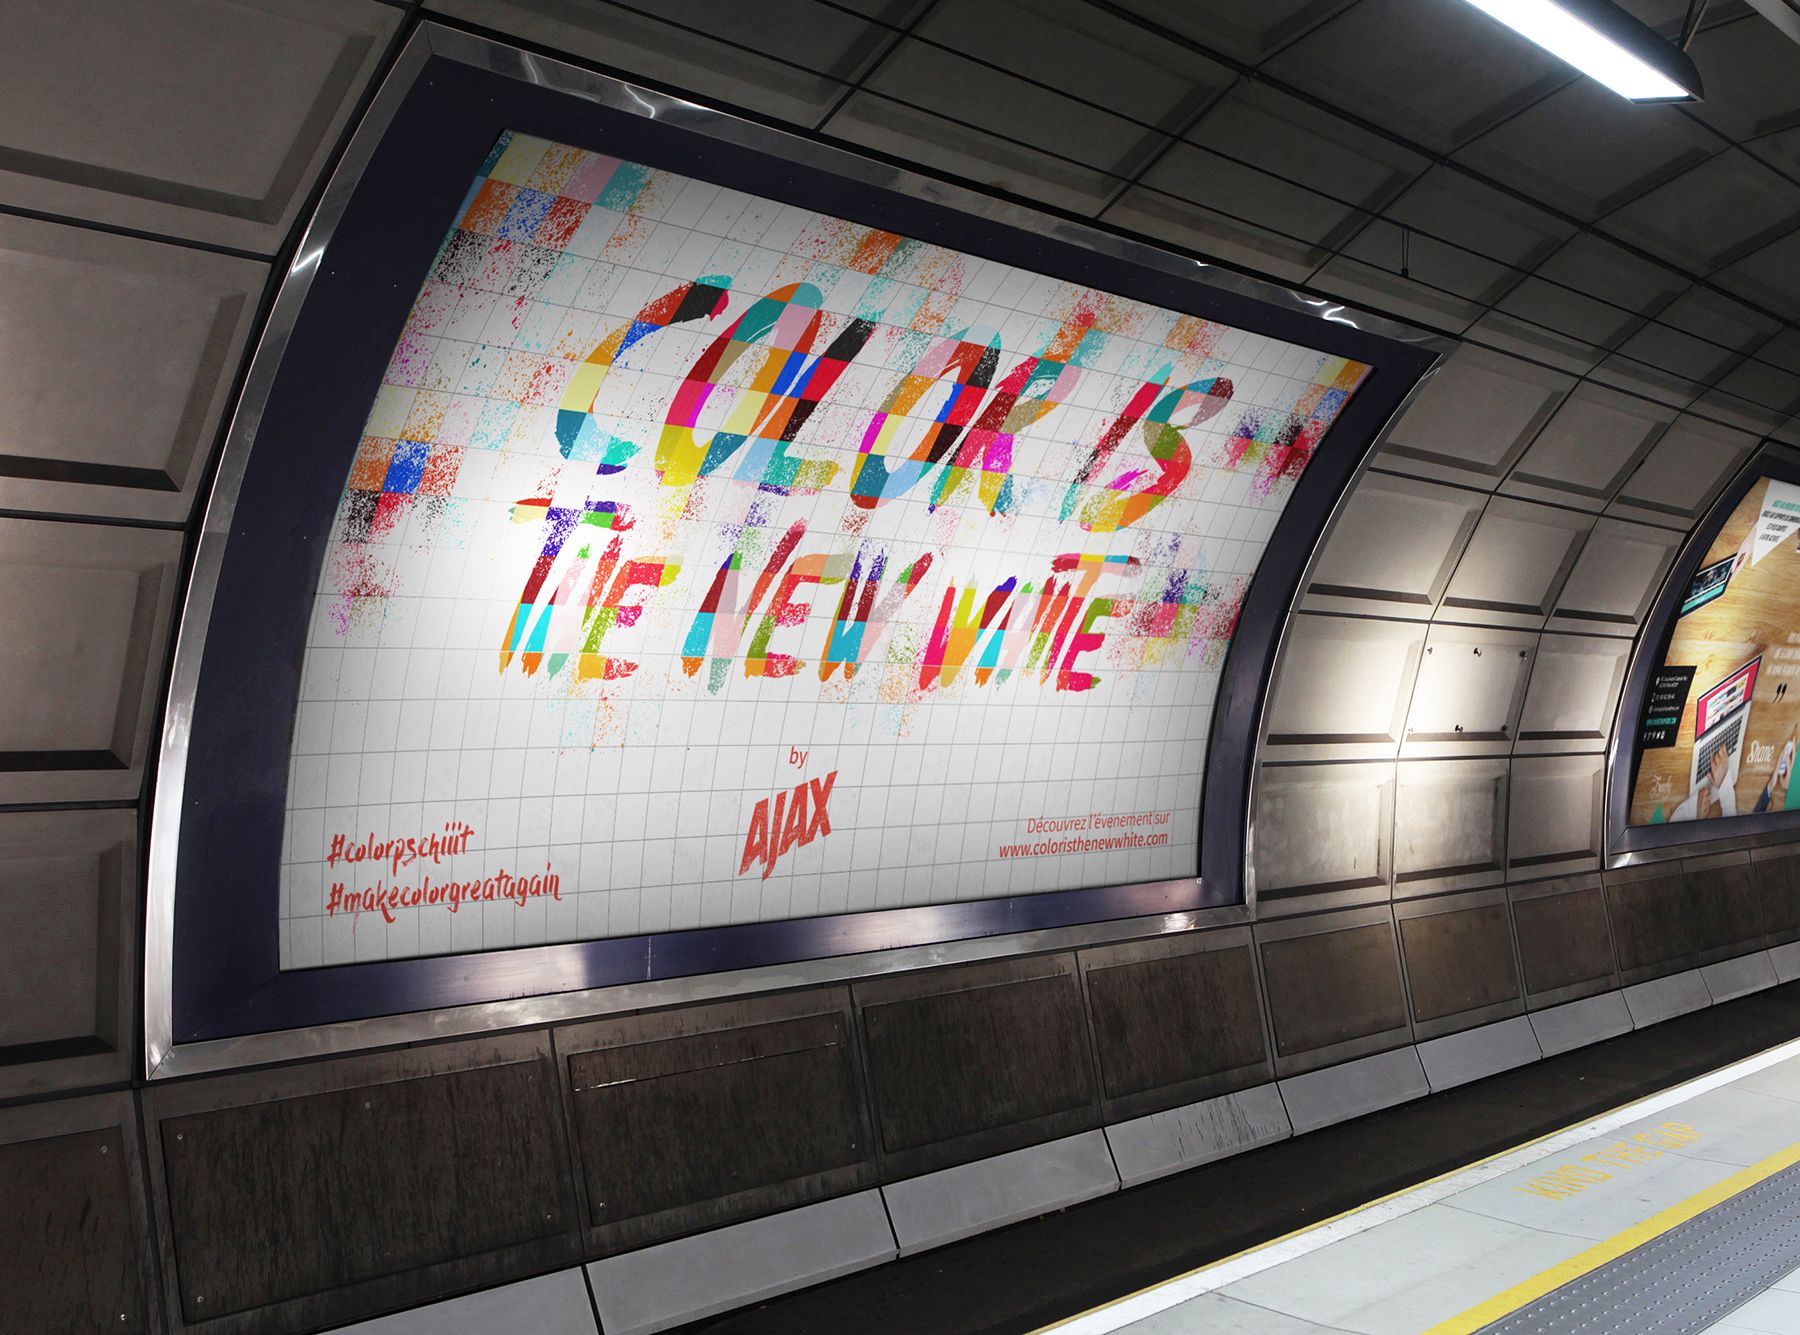 Affichage dans le métro "Color is the new white"